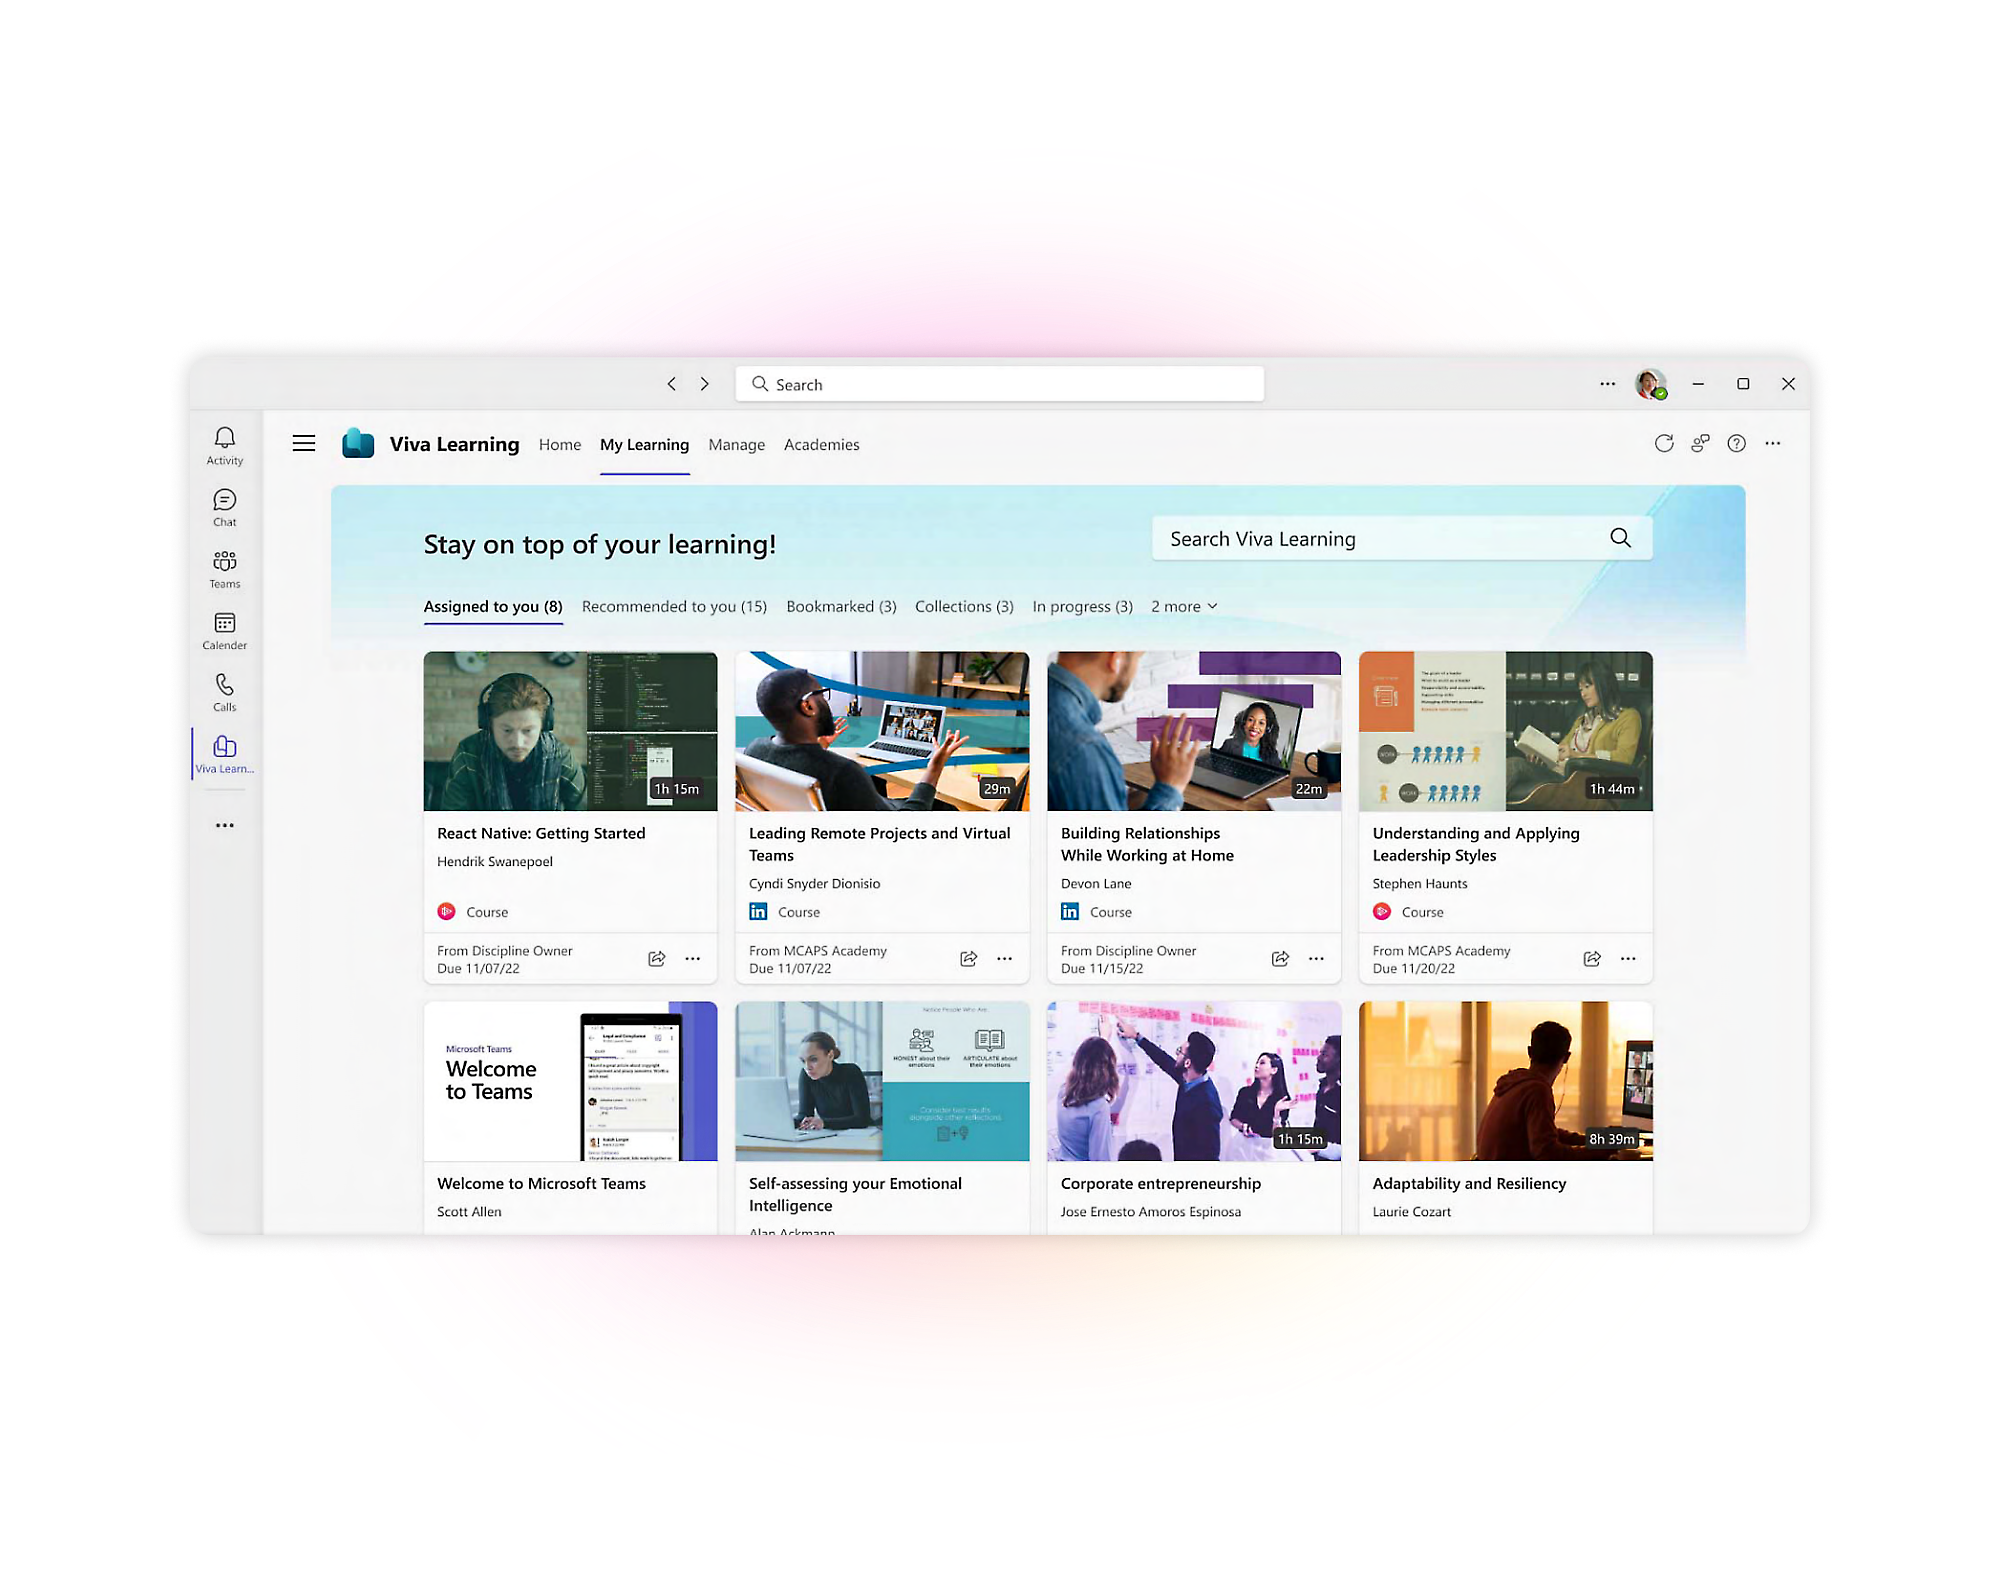 Captura de tela da interface web do Viva Learning mostrando vários cursos educacionais e módulos de aprendizagem sobre habilidades computacionais 